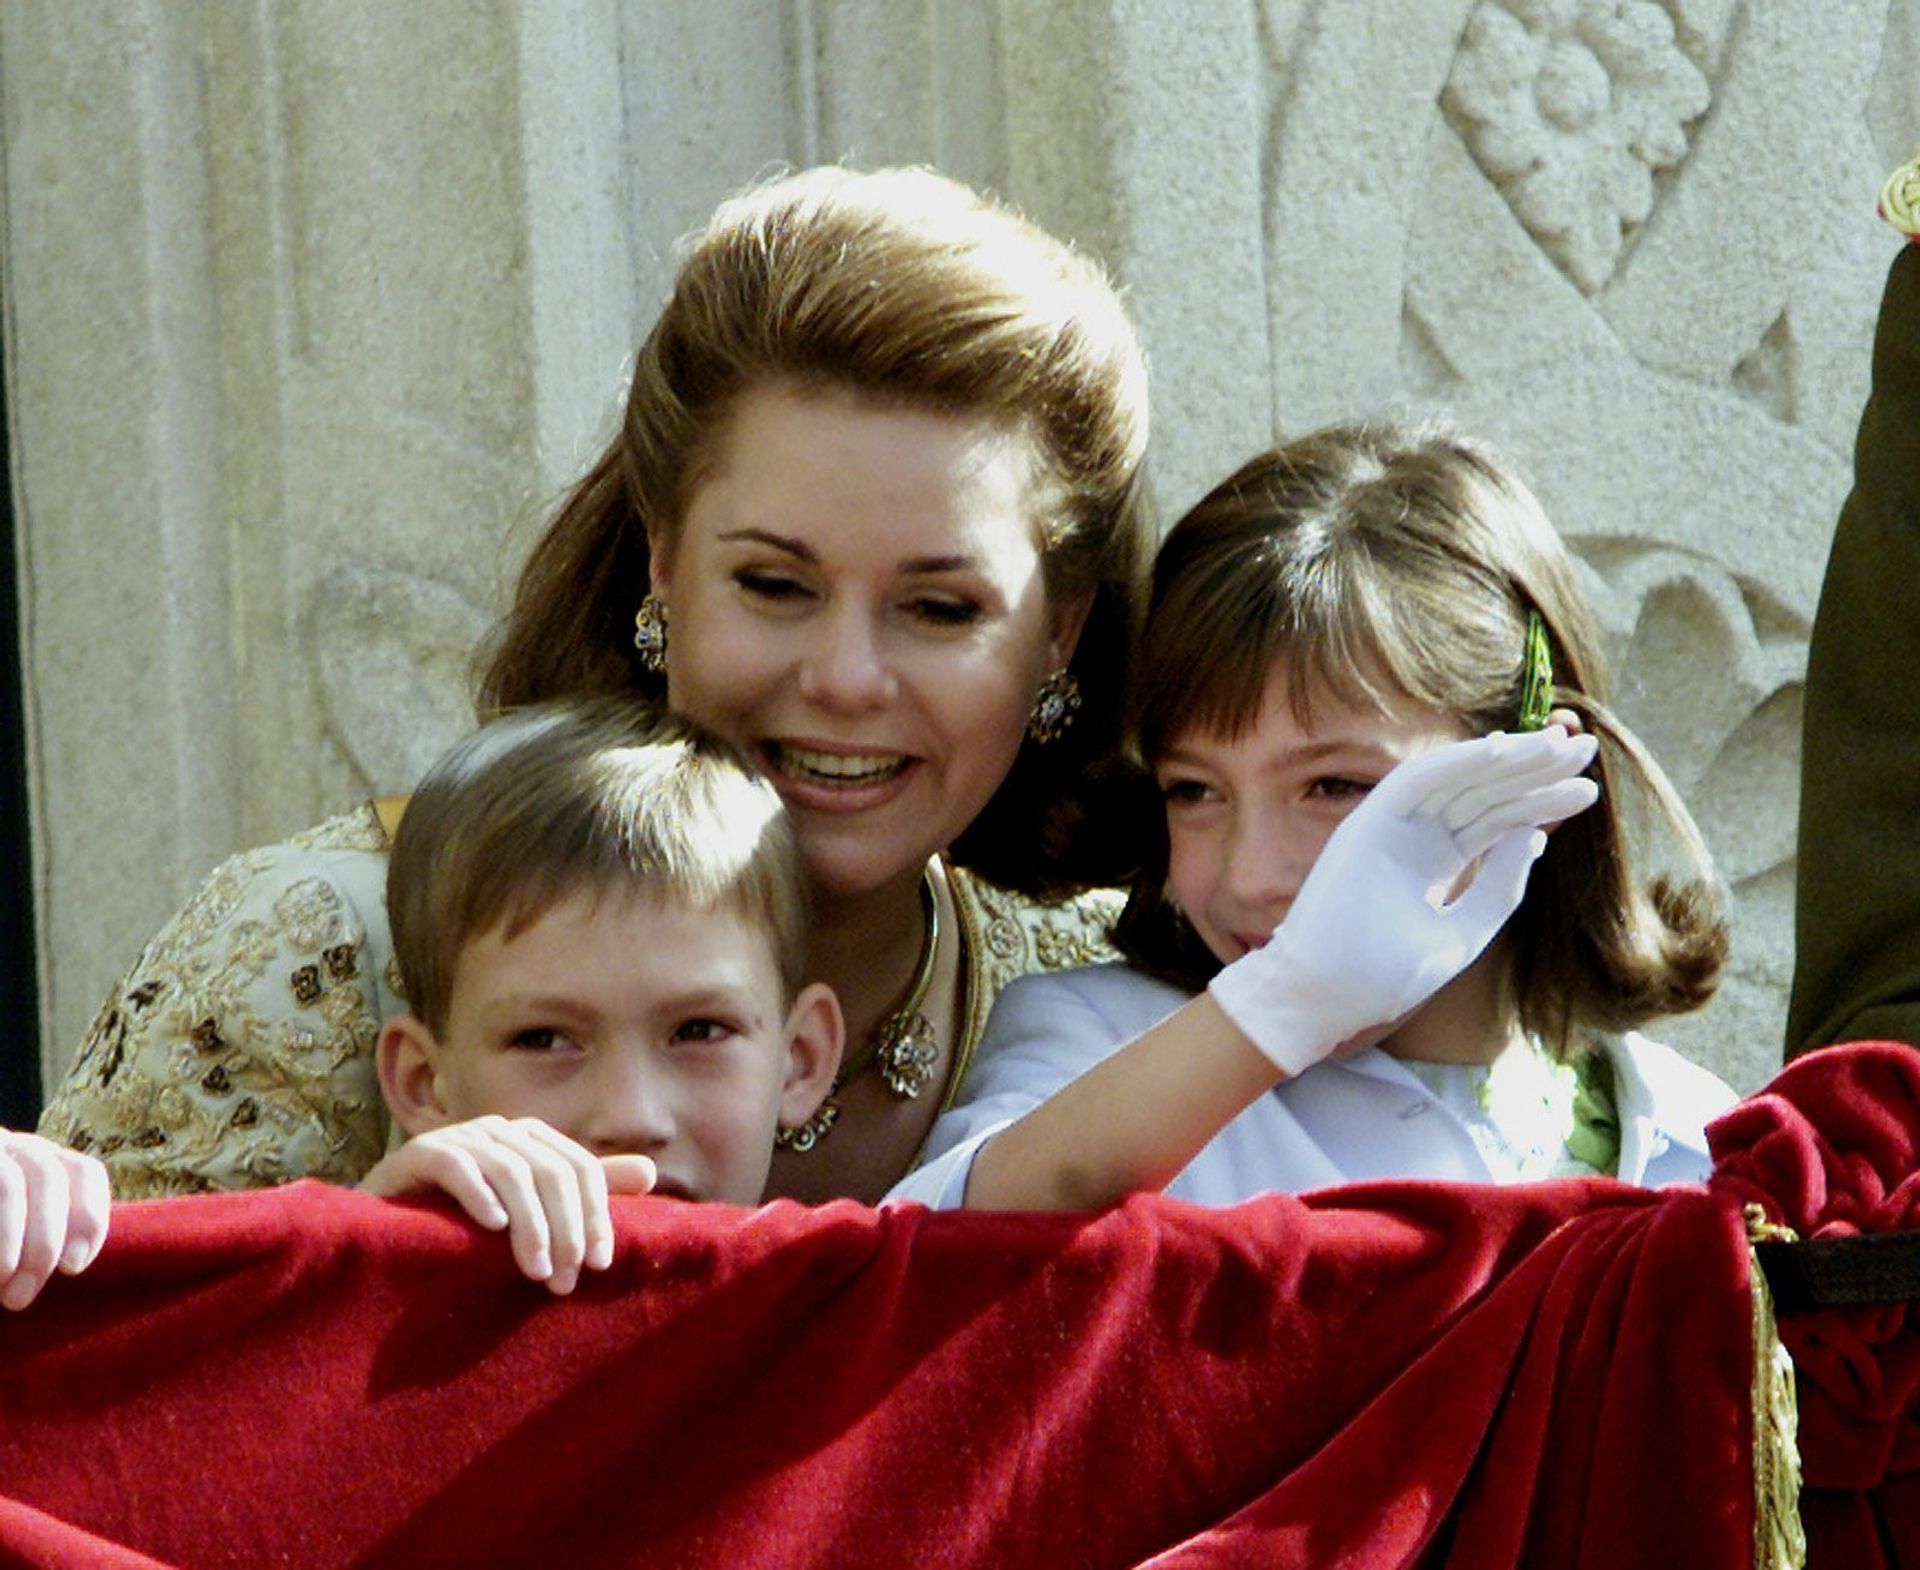 Prinses Alexandra met haar moeder en jongere broertje Sébastien tijdens de balkonscène op de dag van de troonswisseling, 7 oktober 2000.